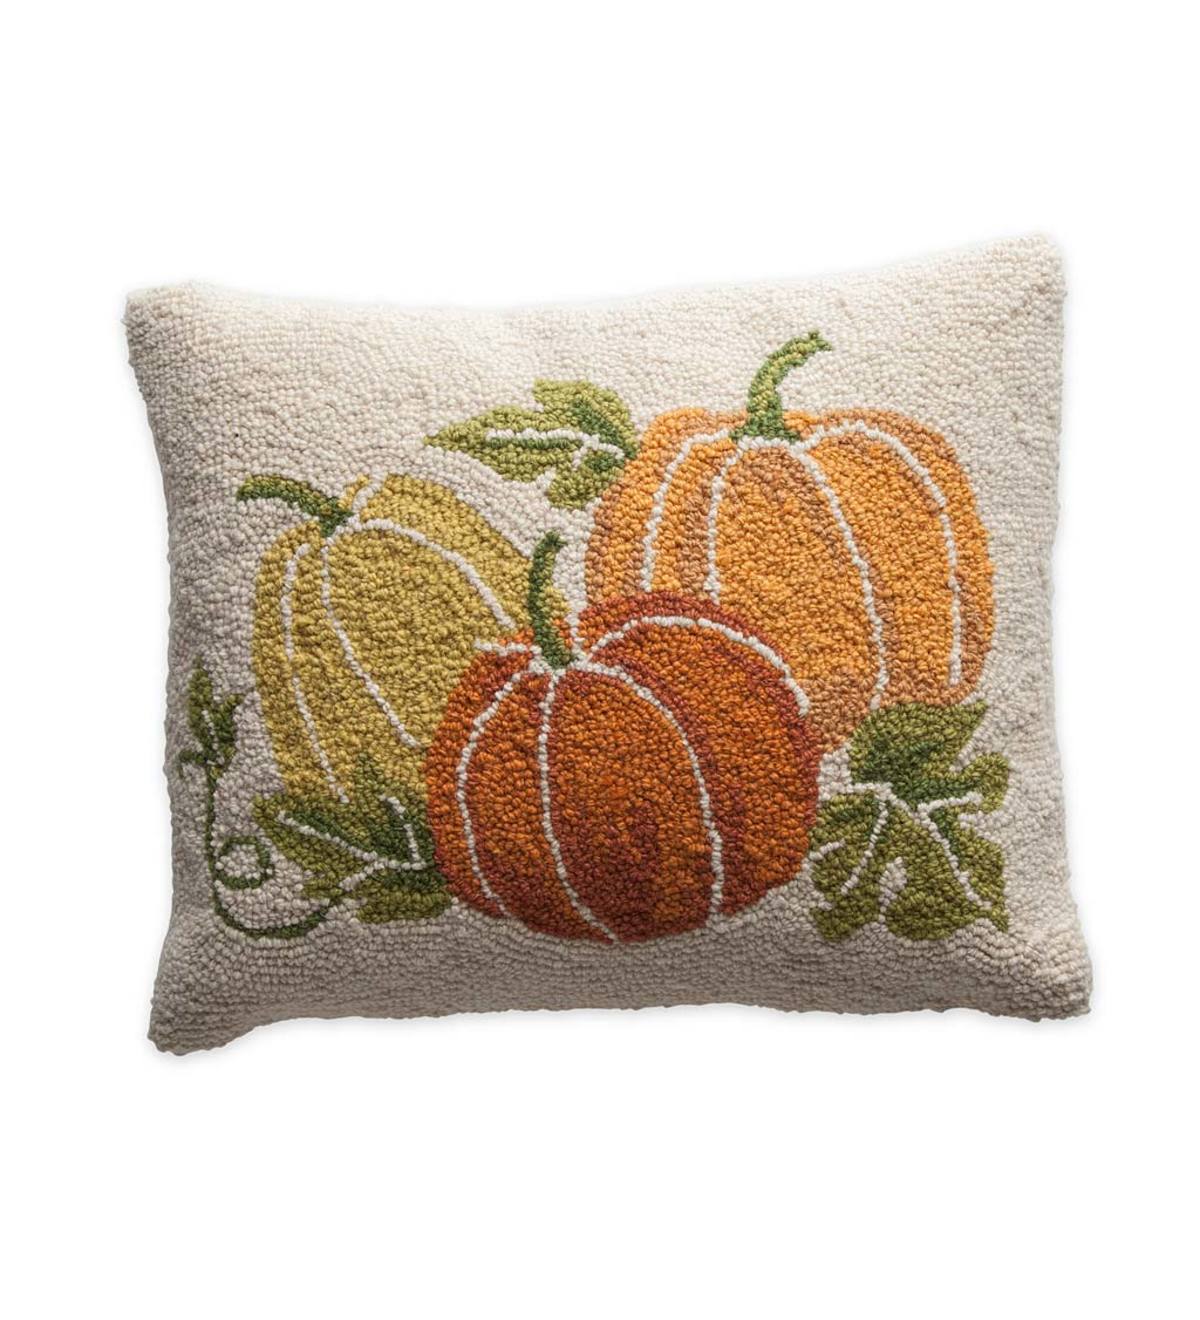 Hand-Hooked Wool Pumpkin Pillow